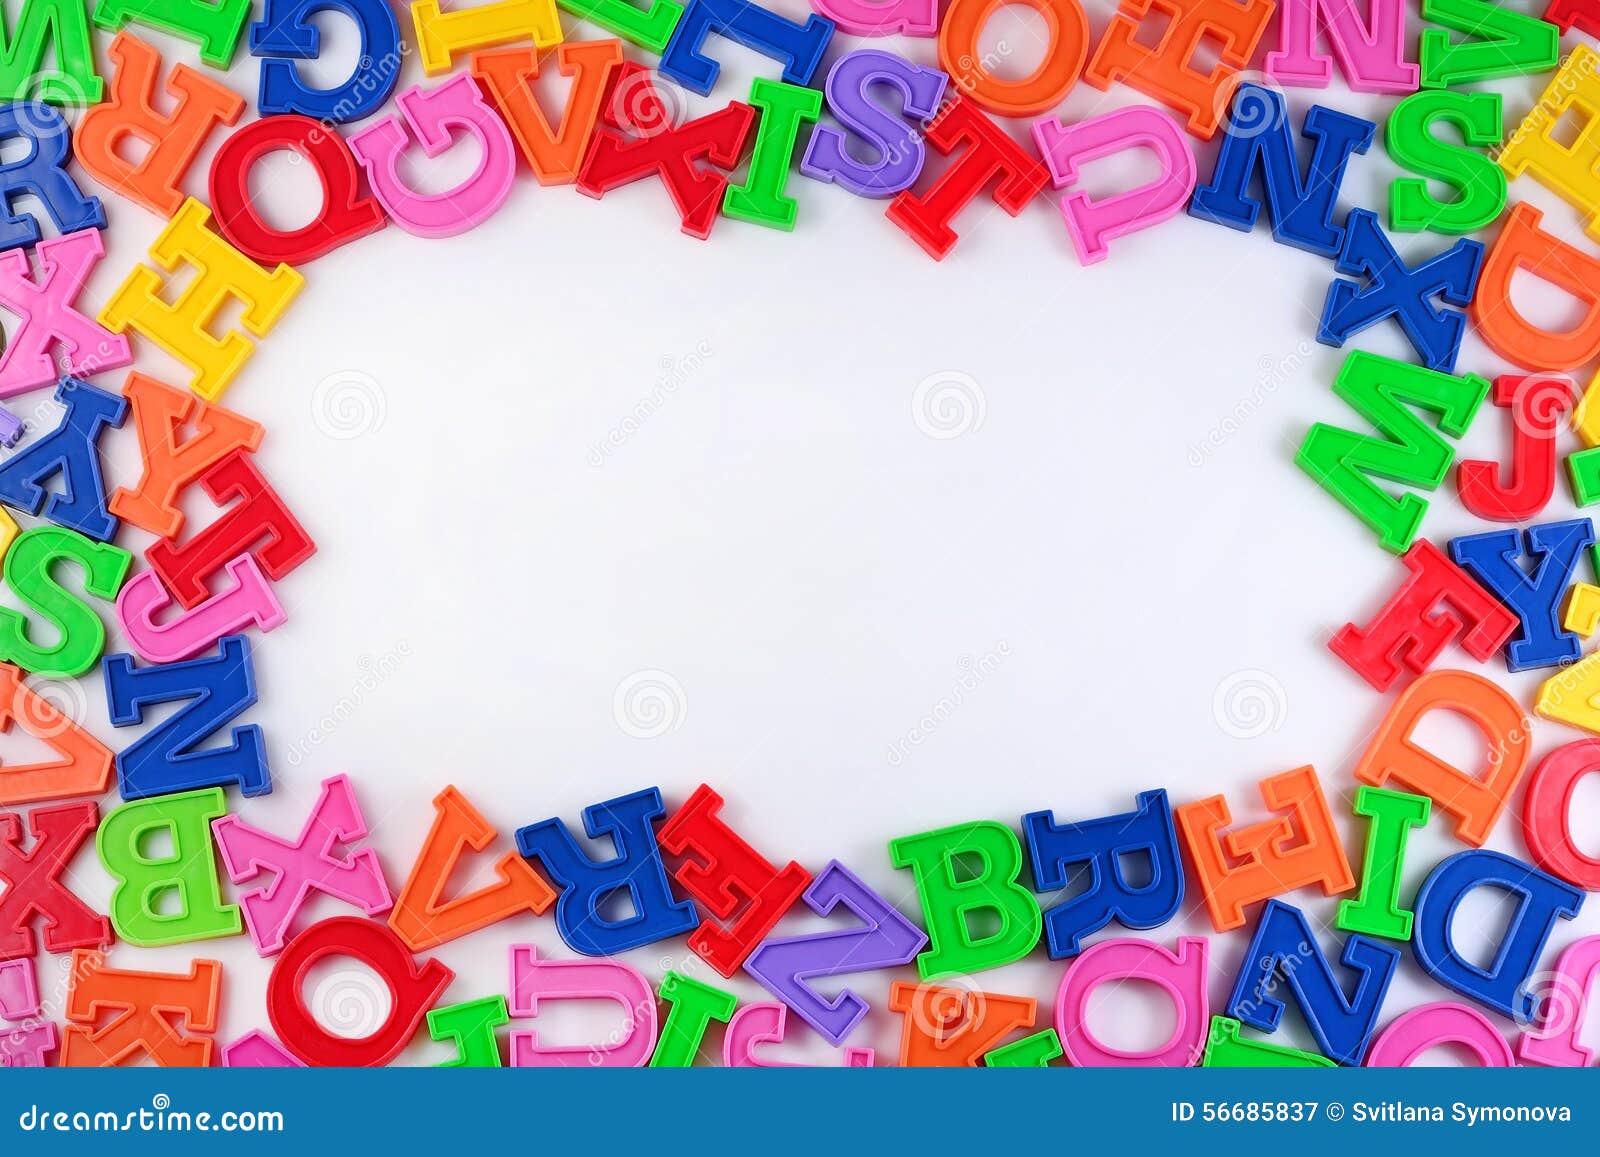 Включи много букв. Алфавит разбросанные буквы. Рамка буквы. Рамки детские с буквами. Рамка Азбука.